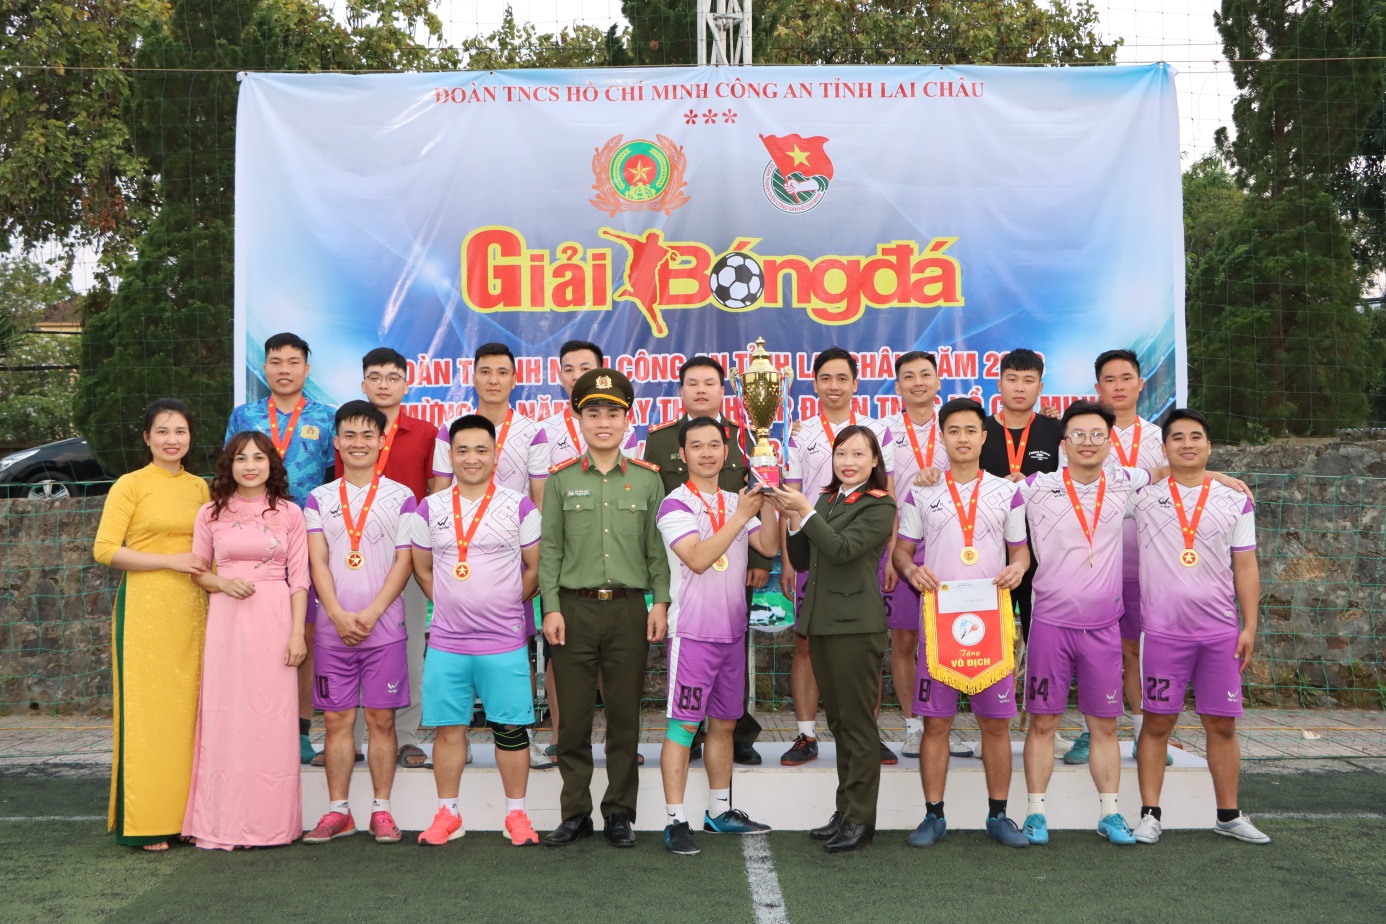 Đồng Chí Ngô Mạnh QUân - Bí thư Đoàn thanh niên Công an tỉnh Trao tặng Cúp và cờ giải nhất cho đội bóng vô địch